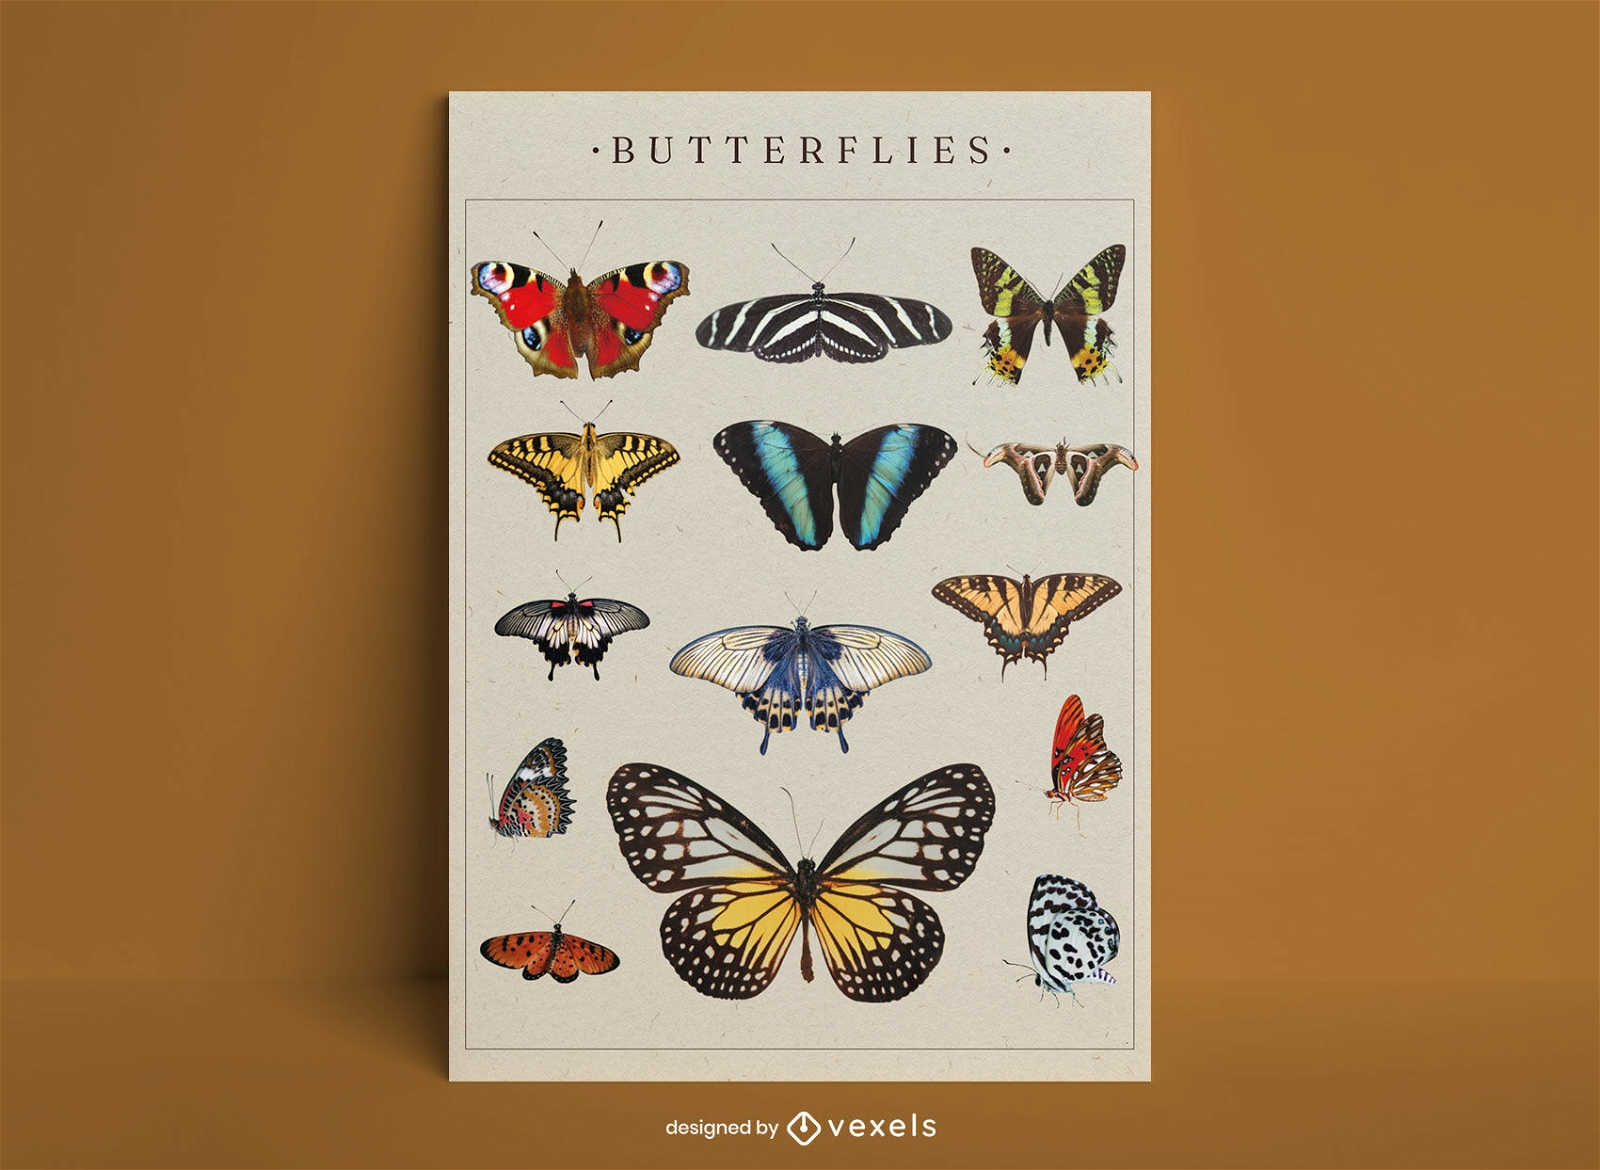 Butterflies poster design